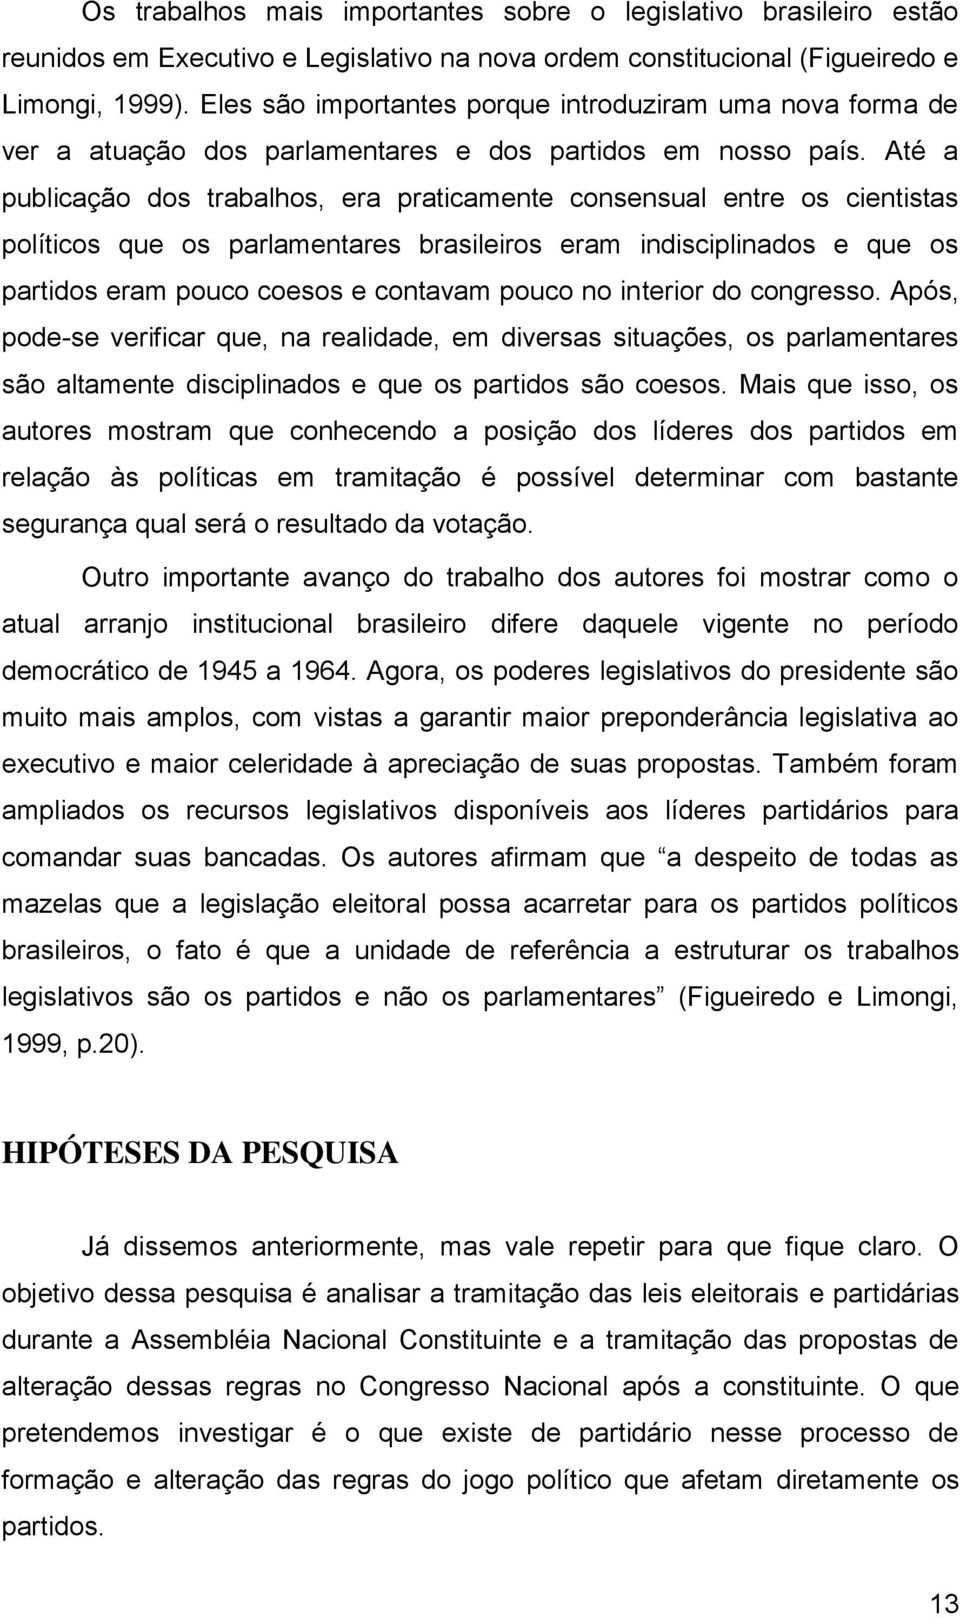 Até a publicação dos trabalhos, era praticamente consensual entre os cientistas políticos que os parlamentares brasileiros eram indisciplinados e que os partidos eram pouco coesos e contavam pouco no